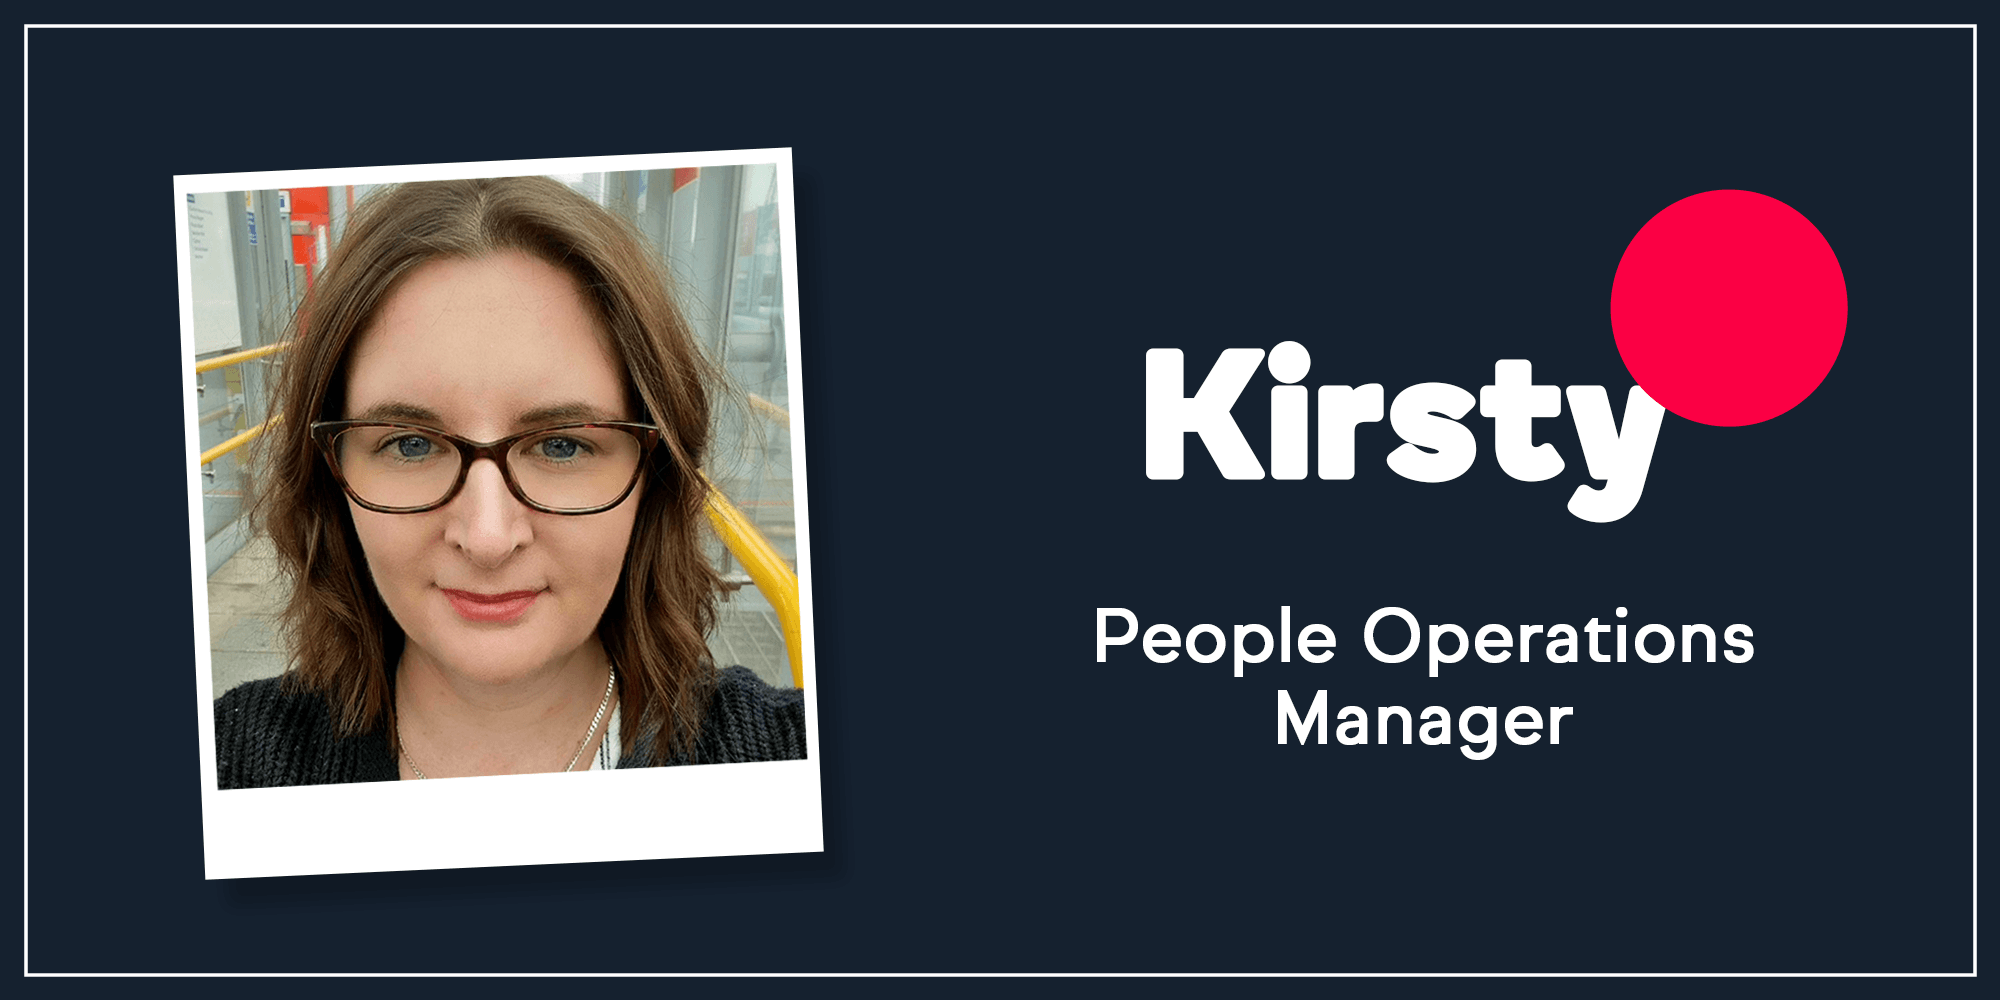 Meet the team: Kirsty